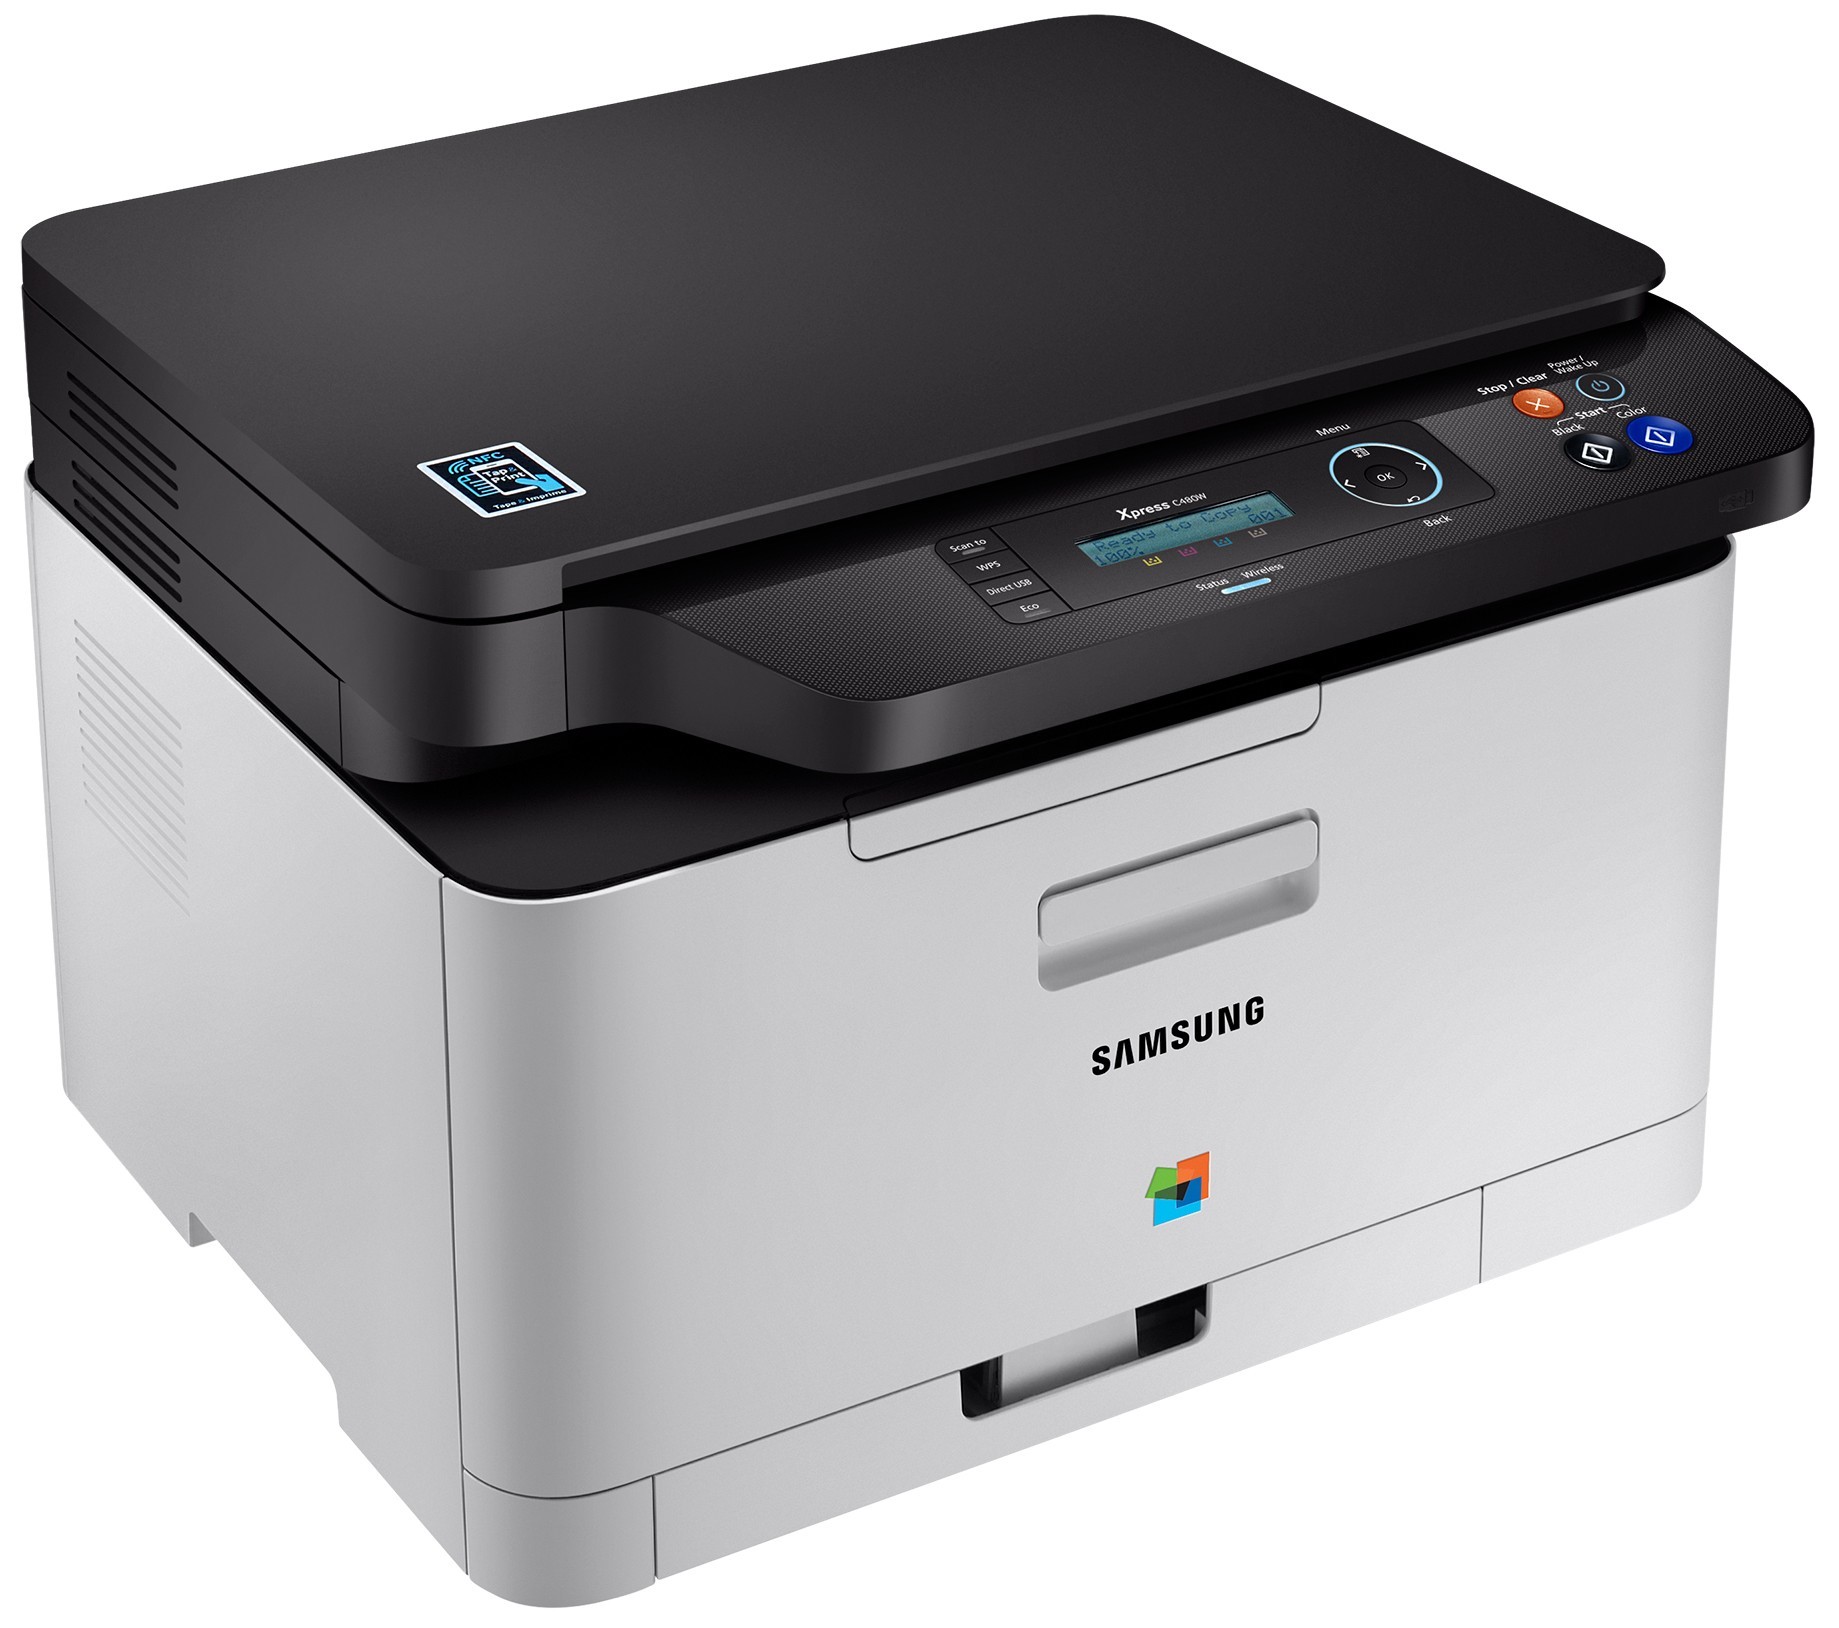 Samsung SL-C480W AIO farvelaserprinter | Elgiganten